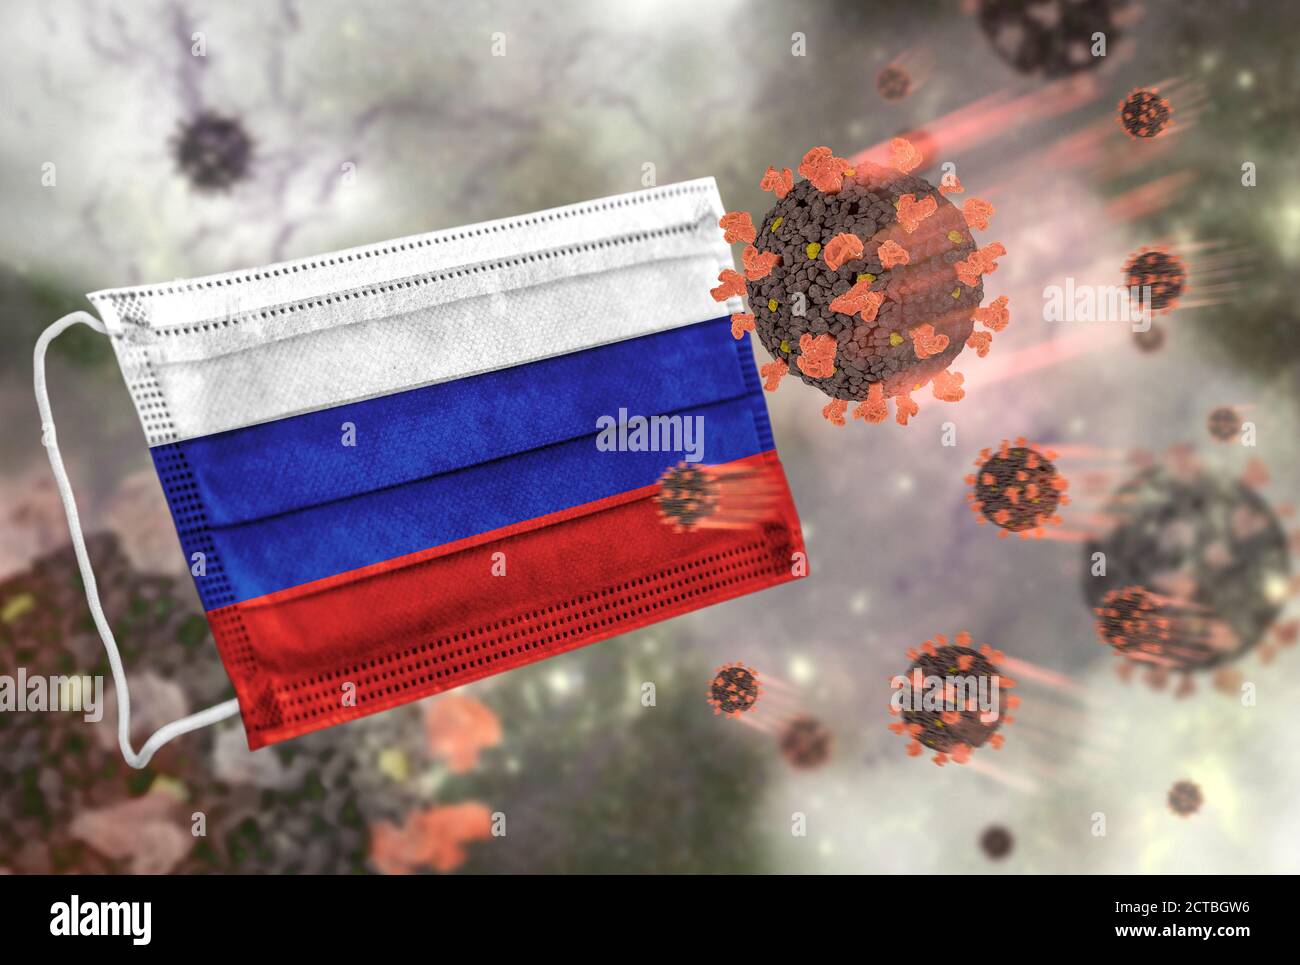 Masque facial avec drapeau de la Russie, défendant le coronavirus Banque D'Images